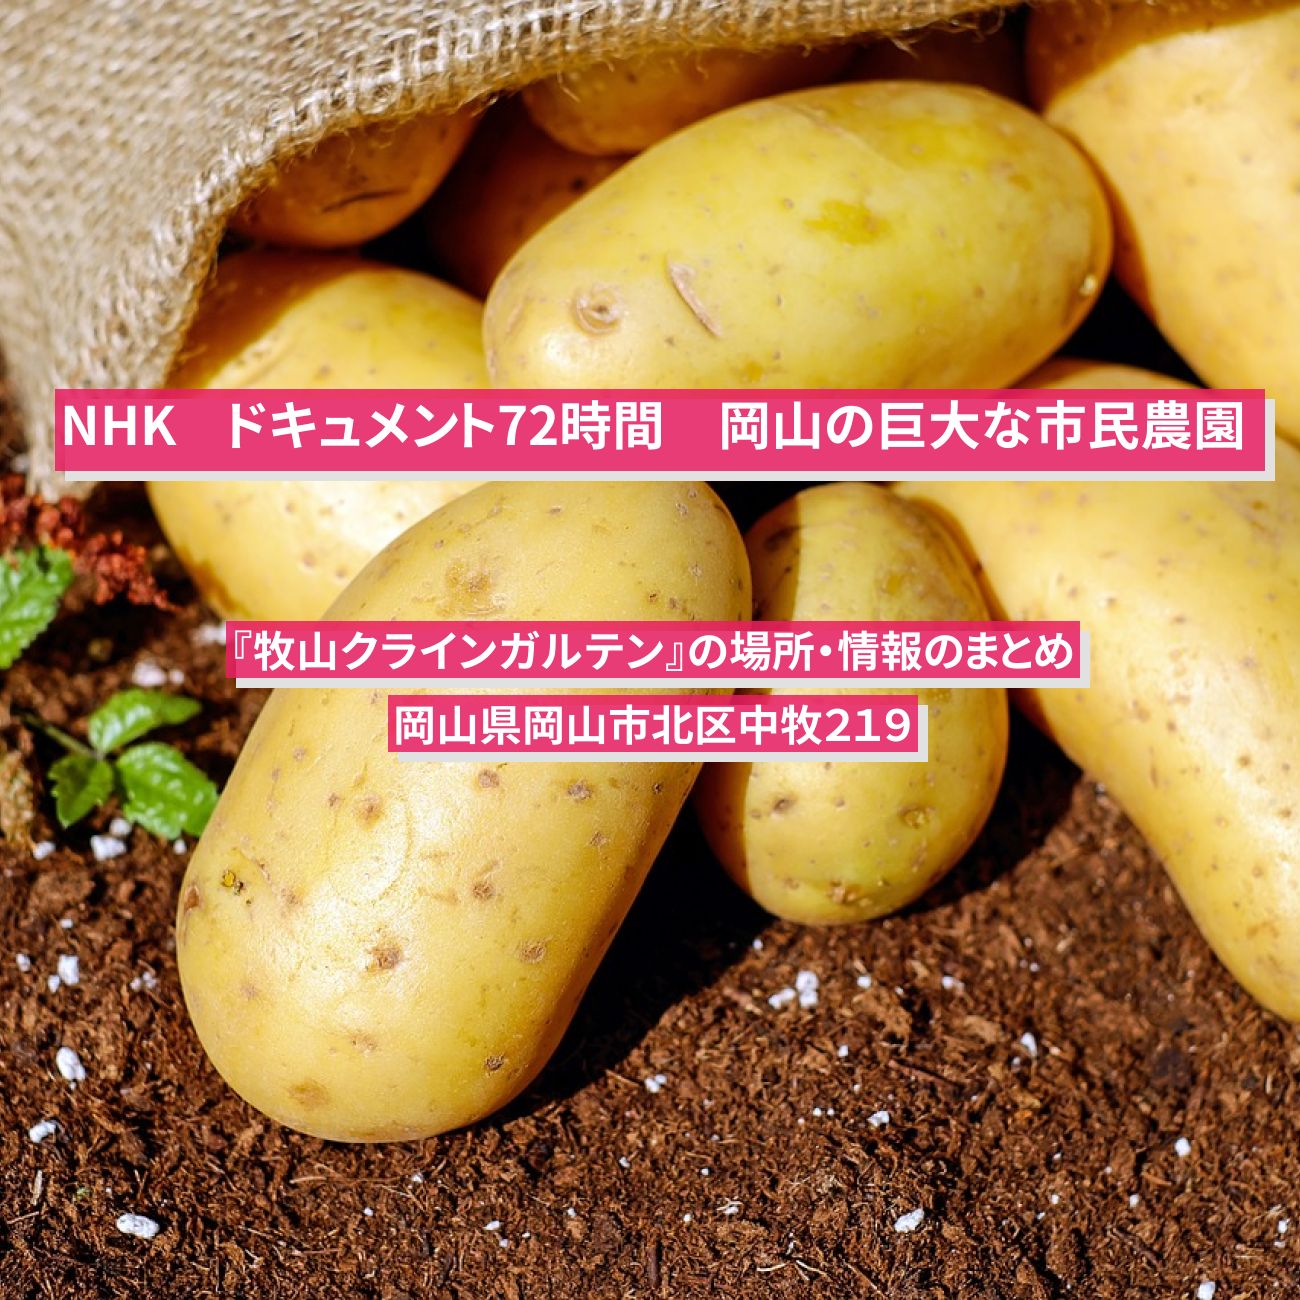 【NHK ドキュメント72時間】岡山の巨大な市民農園『牧山クラインガルテン』の場所・情報のまとめ